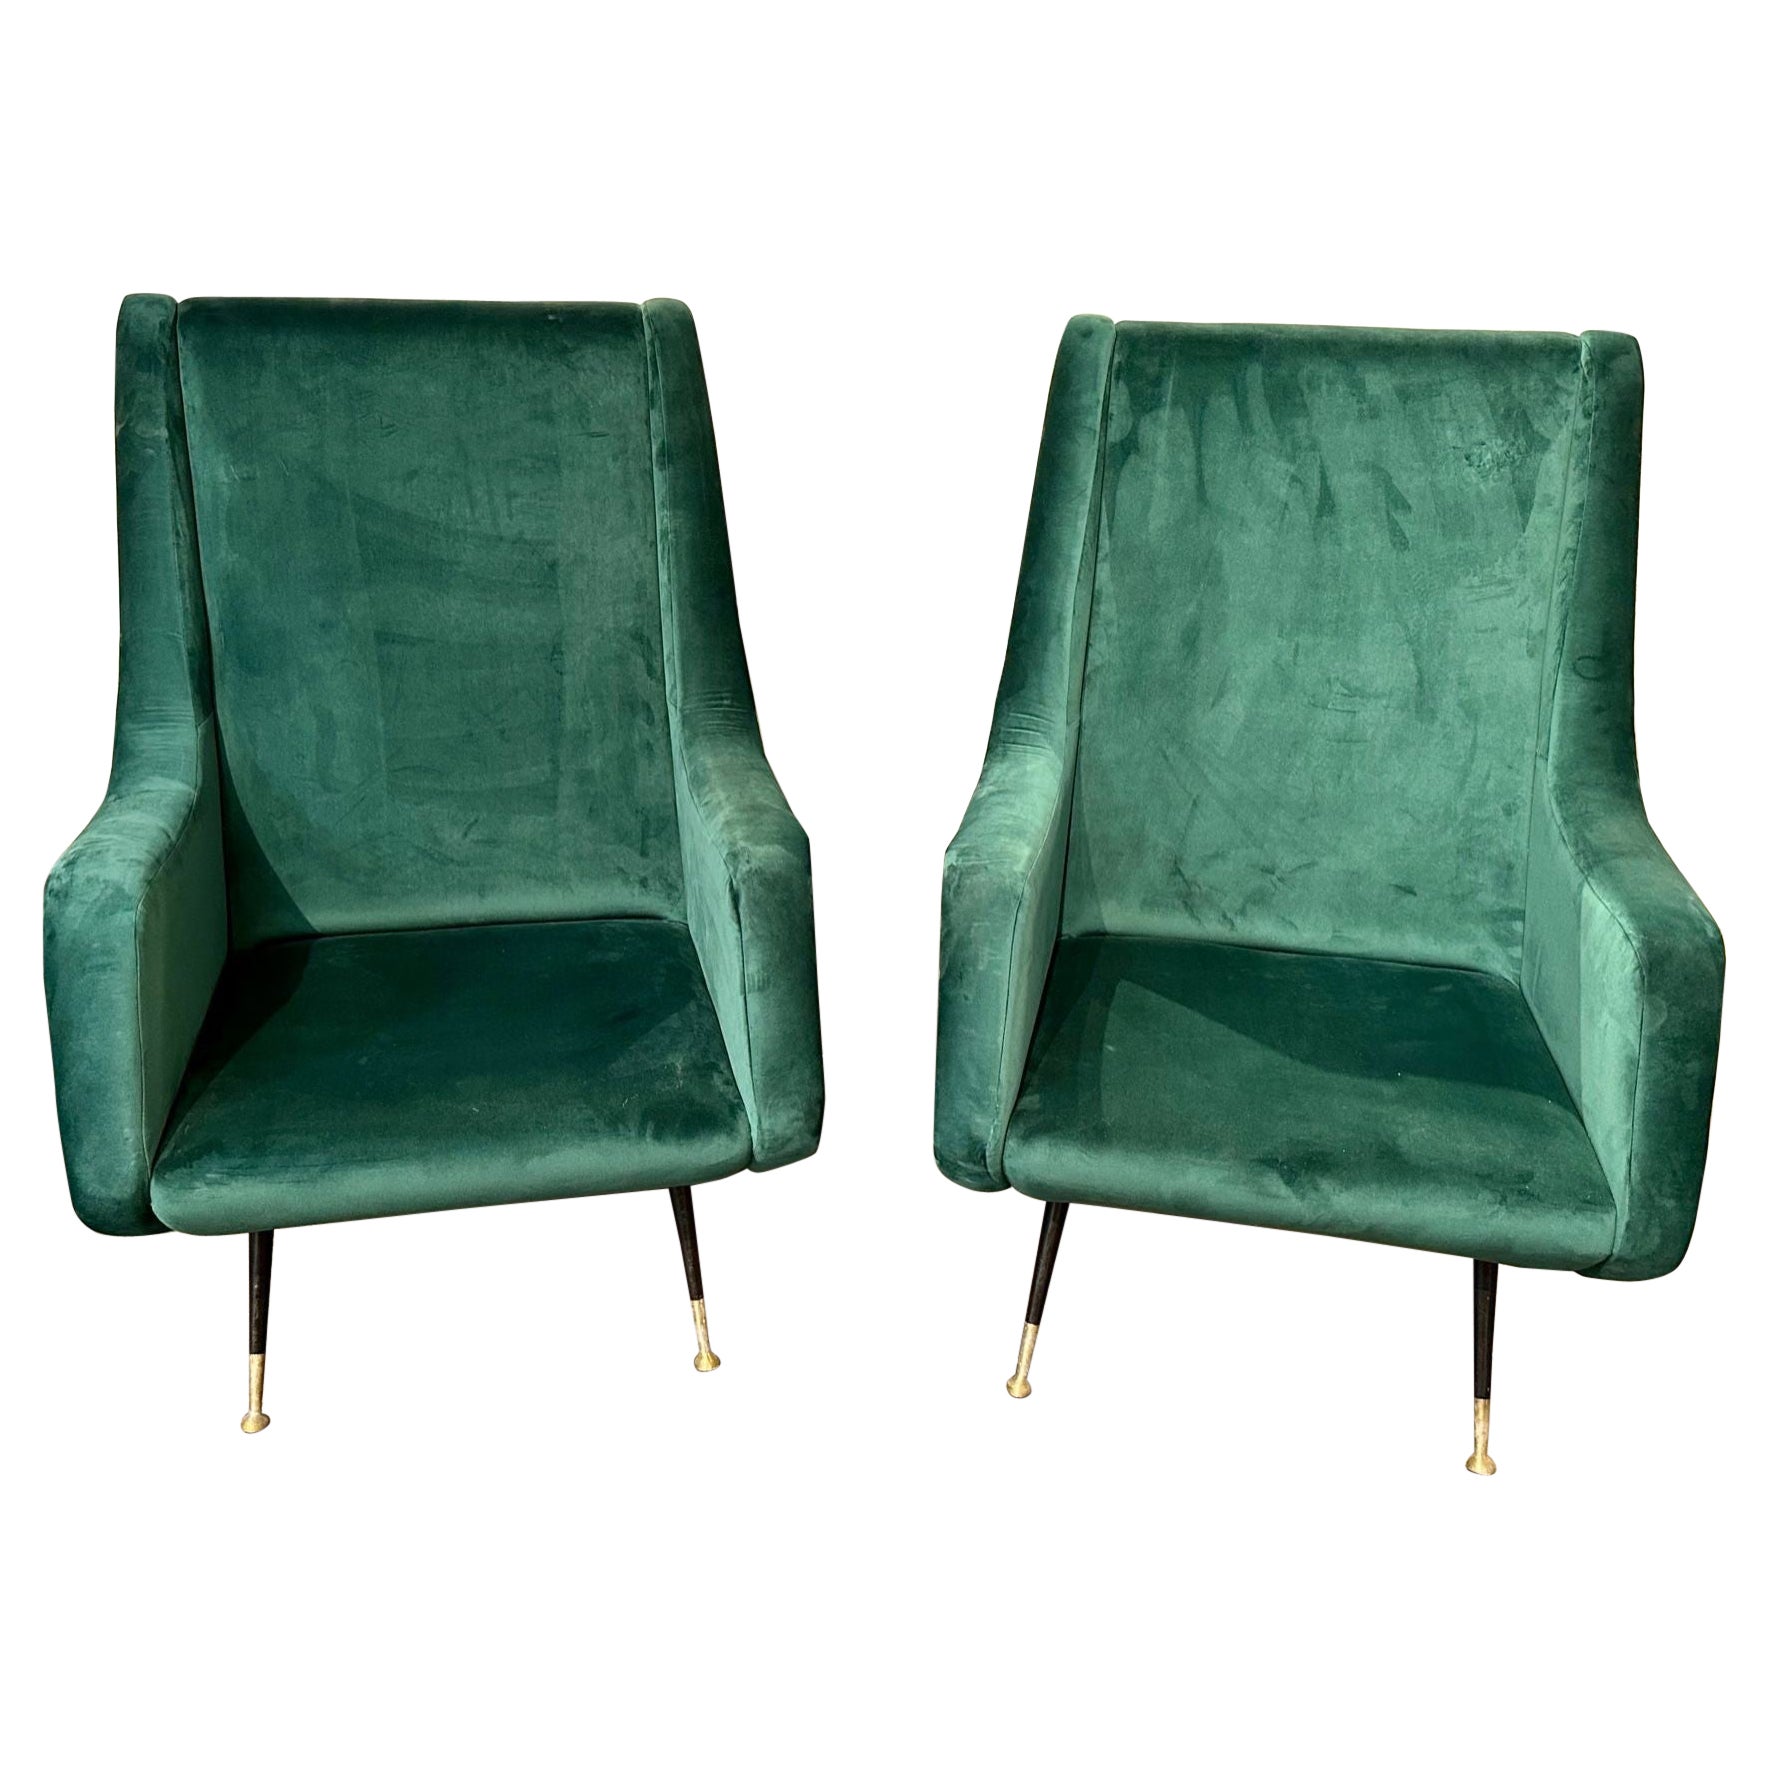 Pair of Italian Green Velvet Mid-Century Modern Chairs For Sale